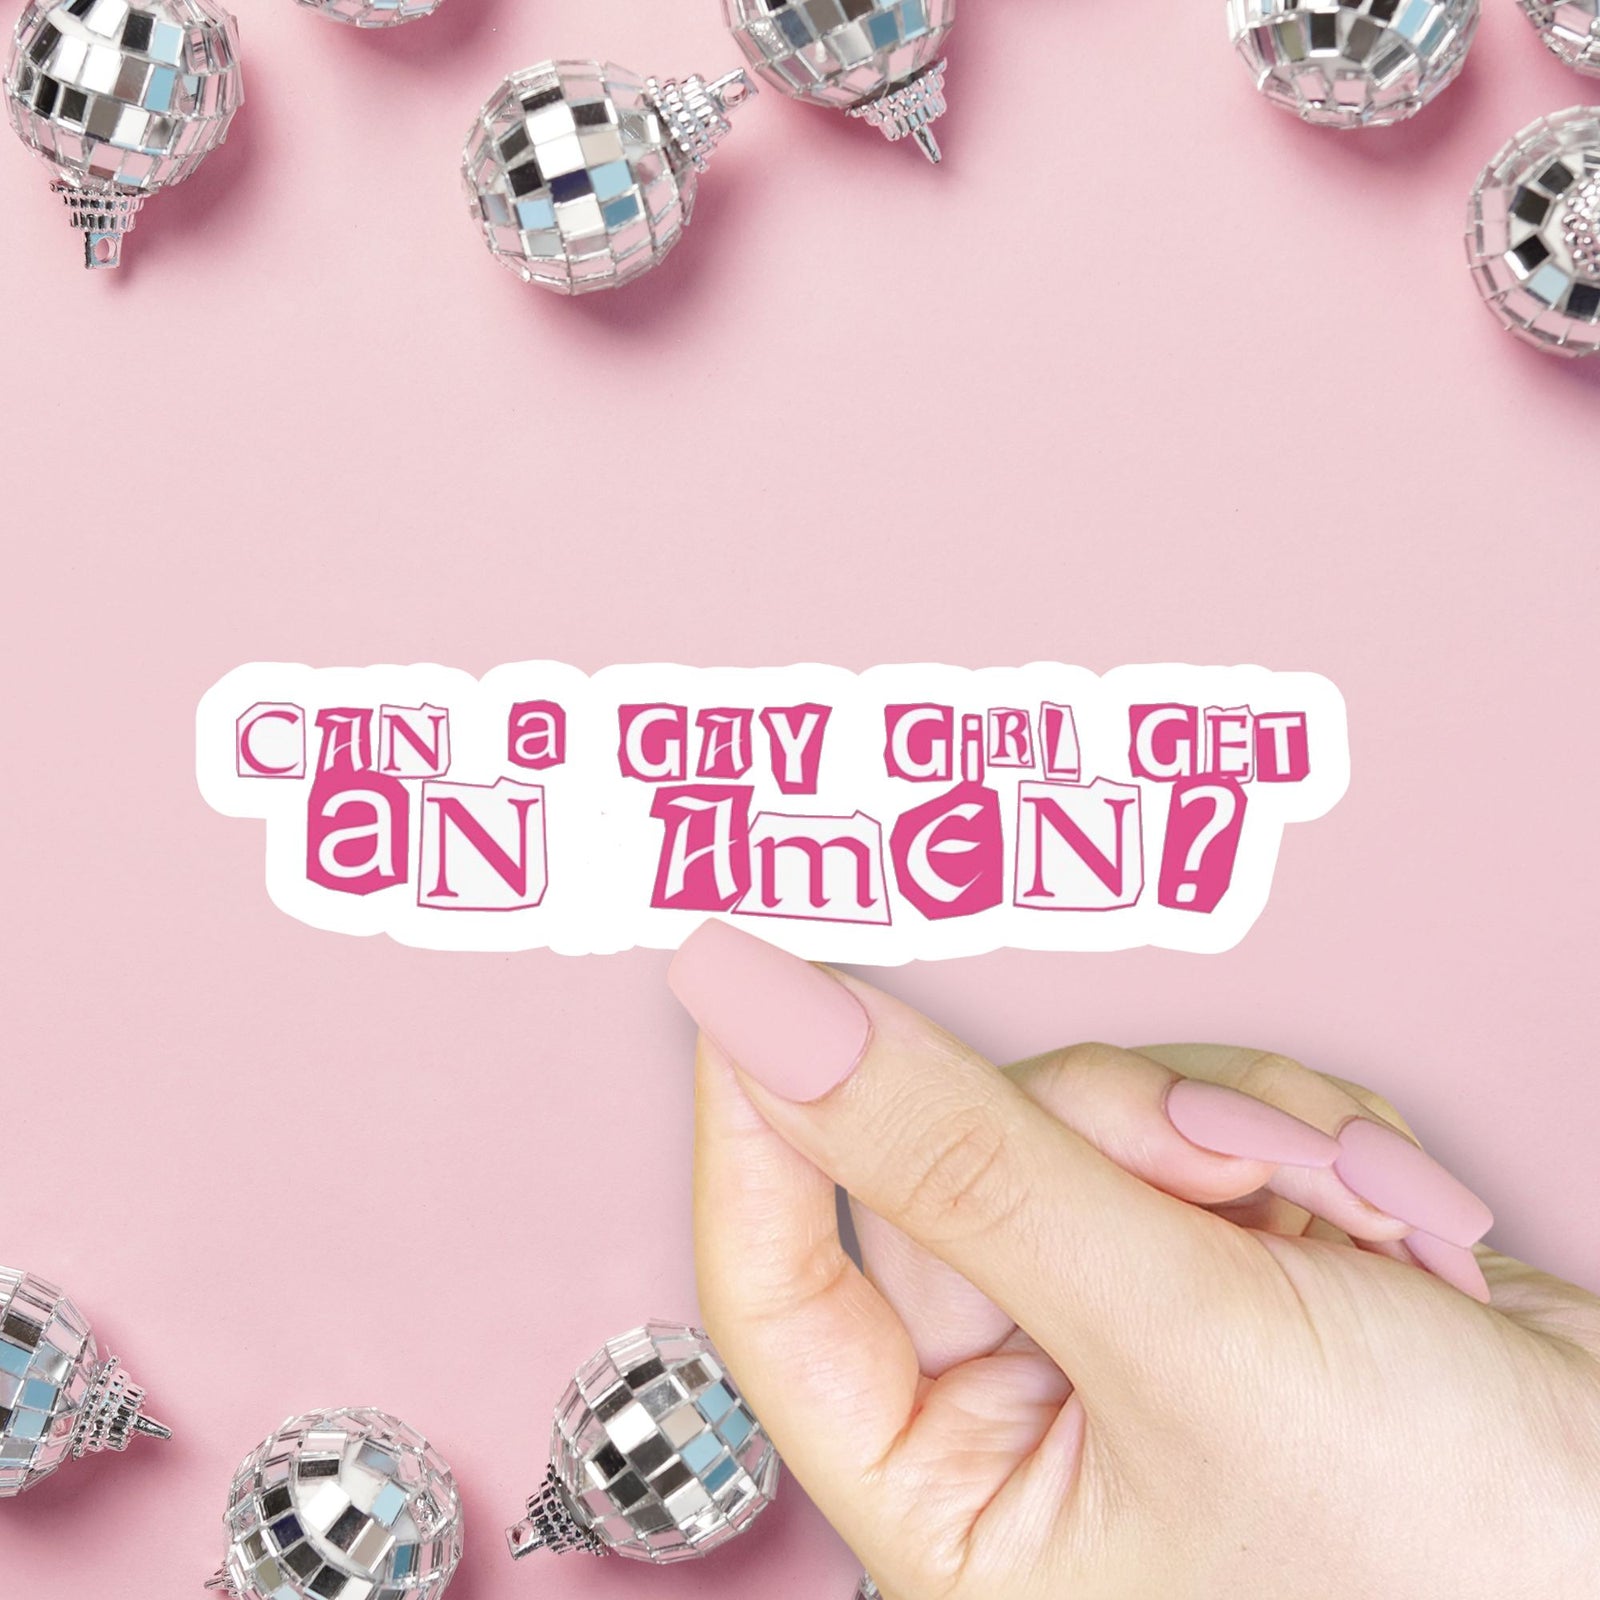 Can a Gay Girl Get an Amen? Sticker, Renee Rapp, Mean Girls Vinyl Sticker